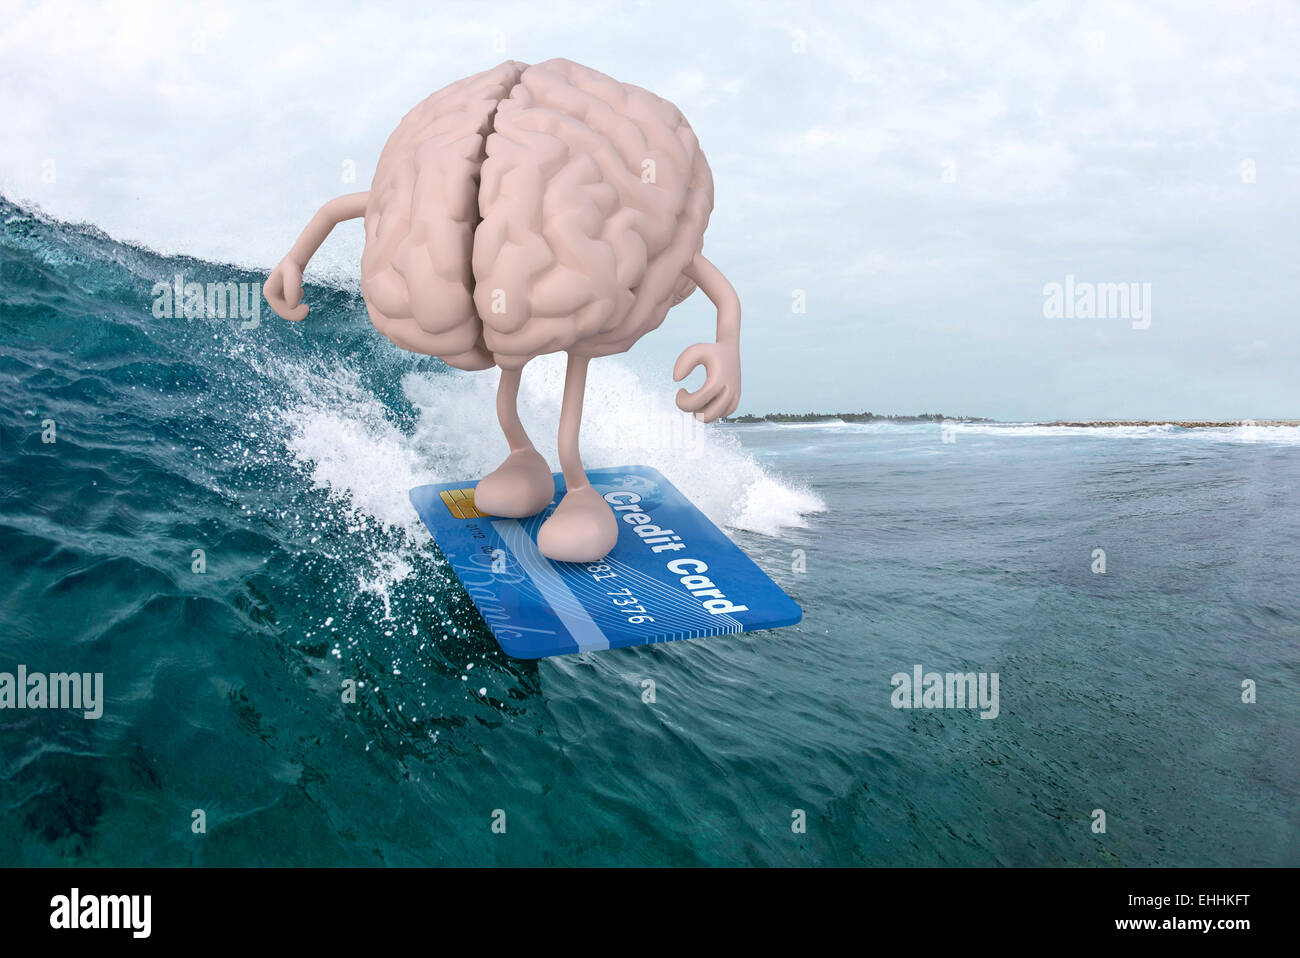 Cerveau humain avec des bras et des jambes avec surf surfboard de carte de crédit, 3d illustration Banque D'Images